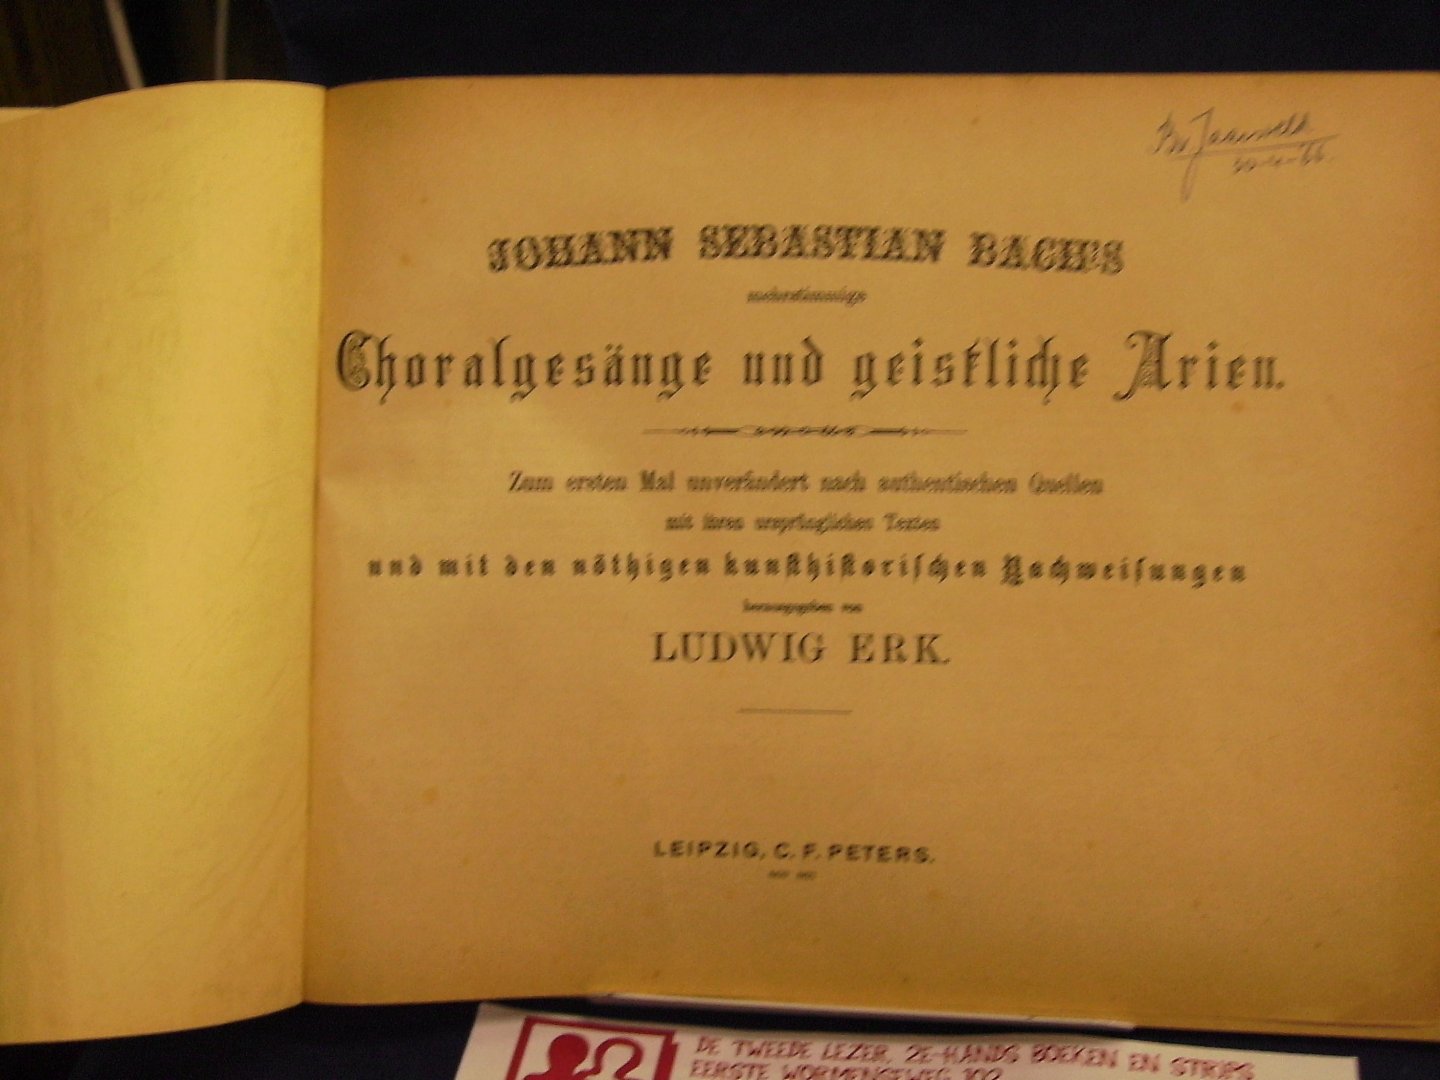 Erk, Ludwig - Johan Sebastian Bach's mehrstimmige Choralgesänge und geistliche Arien.  Zum ersten Mal unverändert nach authentischen Quellen mit ihren ursprünglichen Texten und mit den nöthigen kunsthistorischen Nachweissungen herausgegeben von Ludwig Erk.